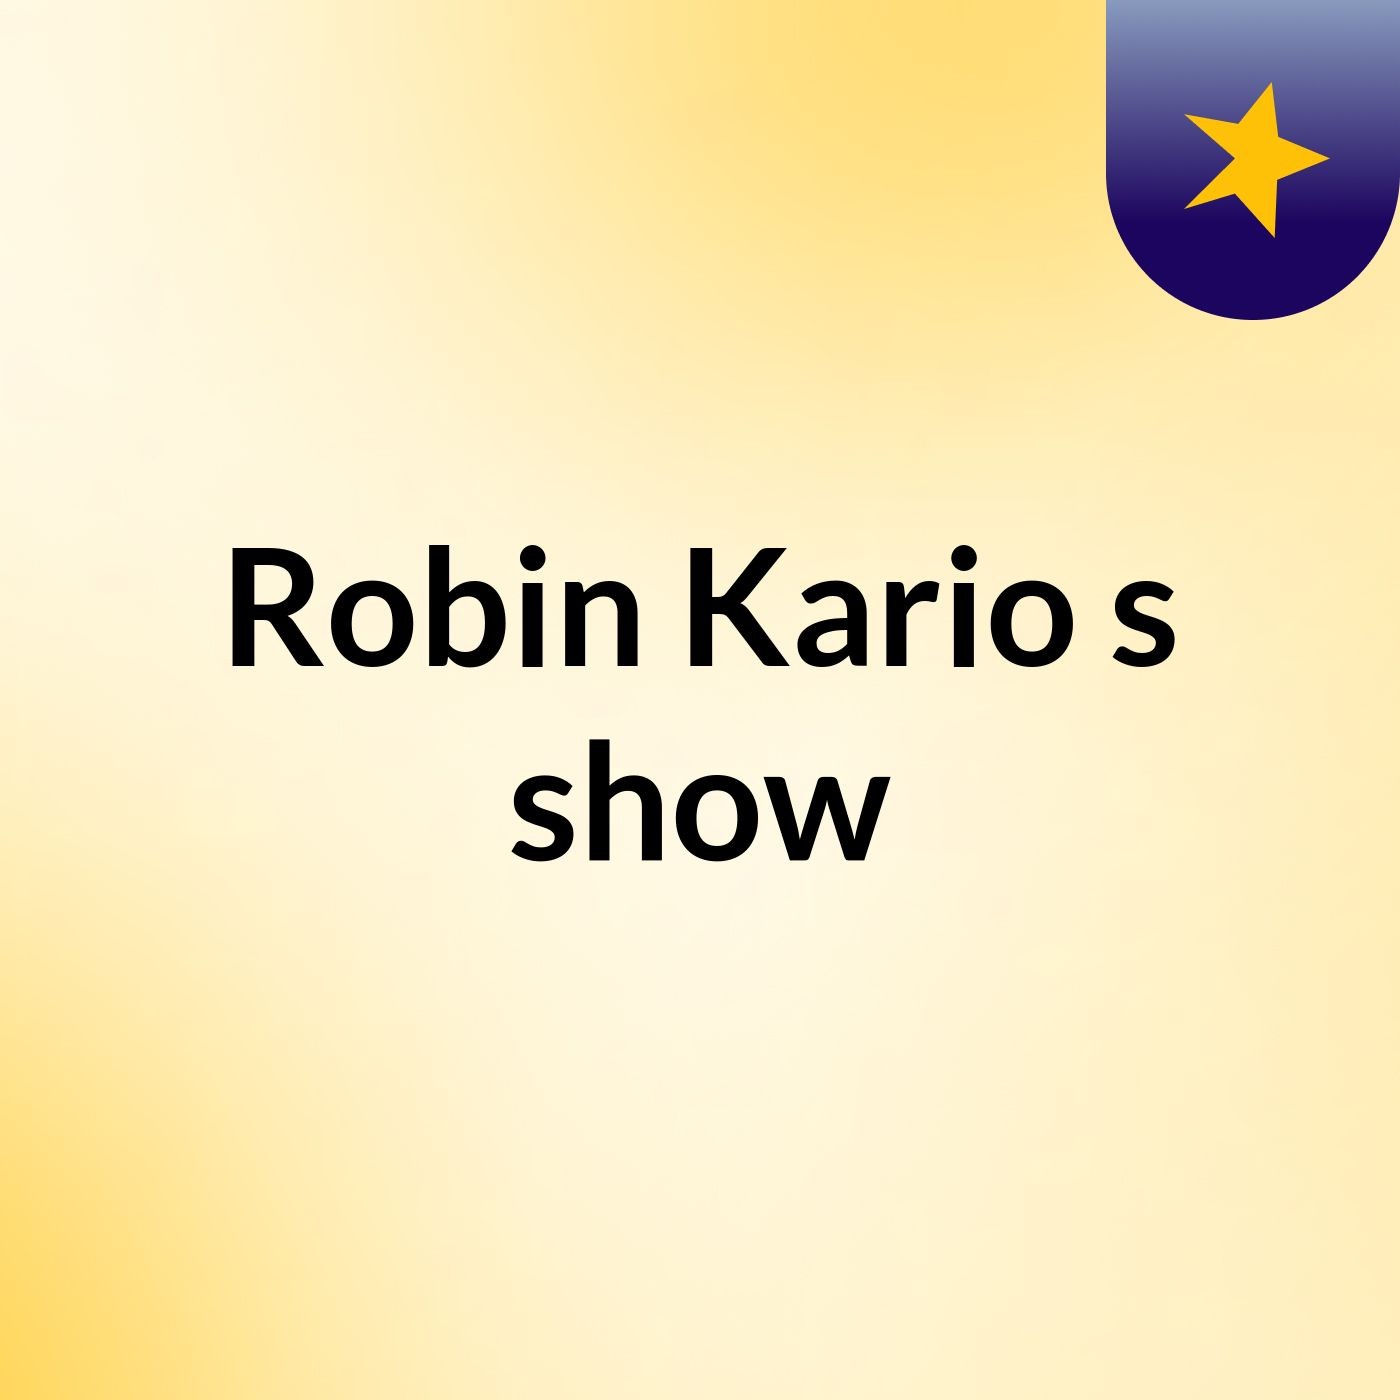 Robin Kario's show